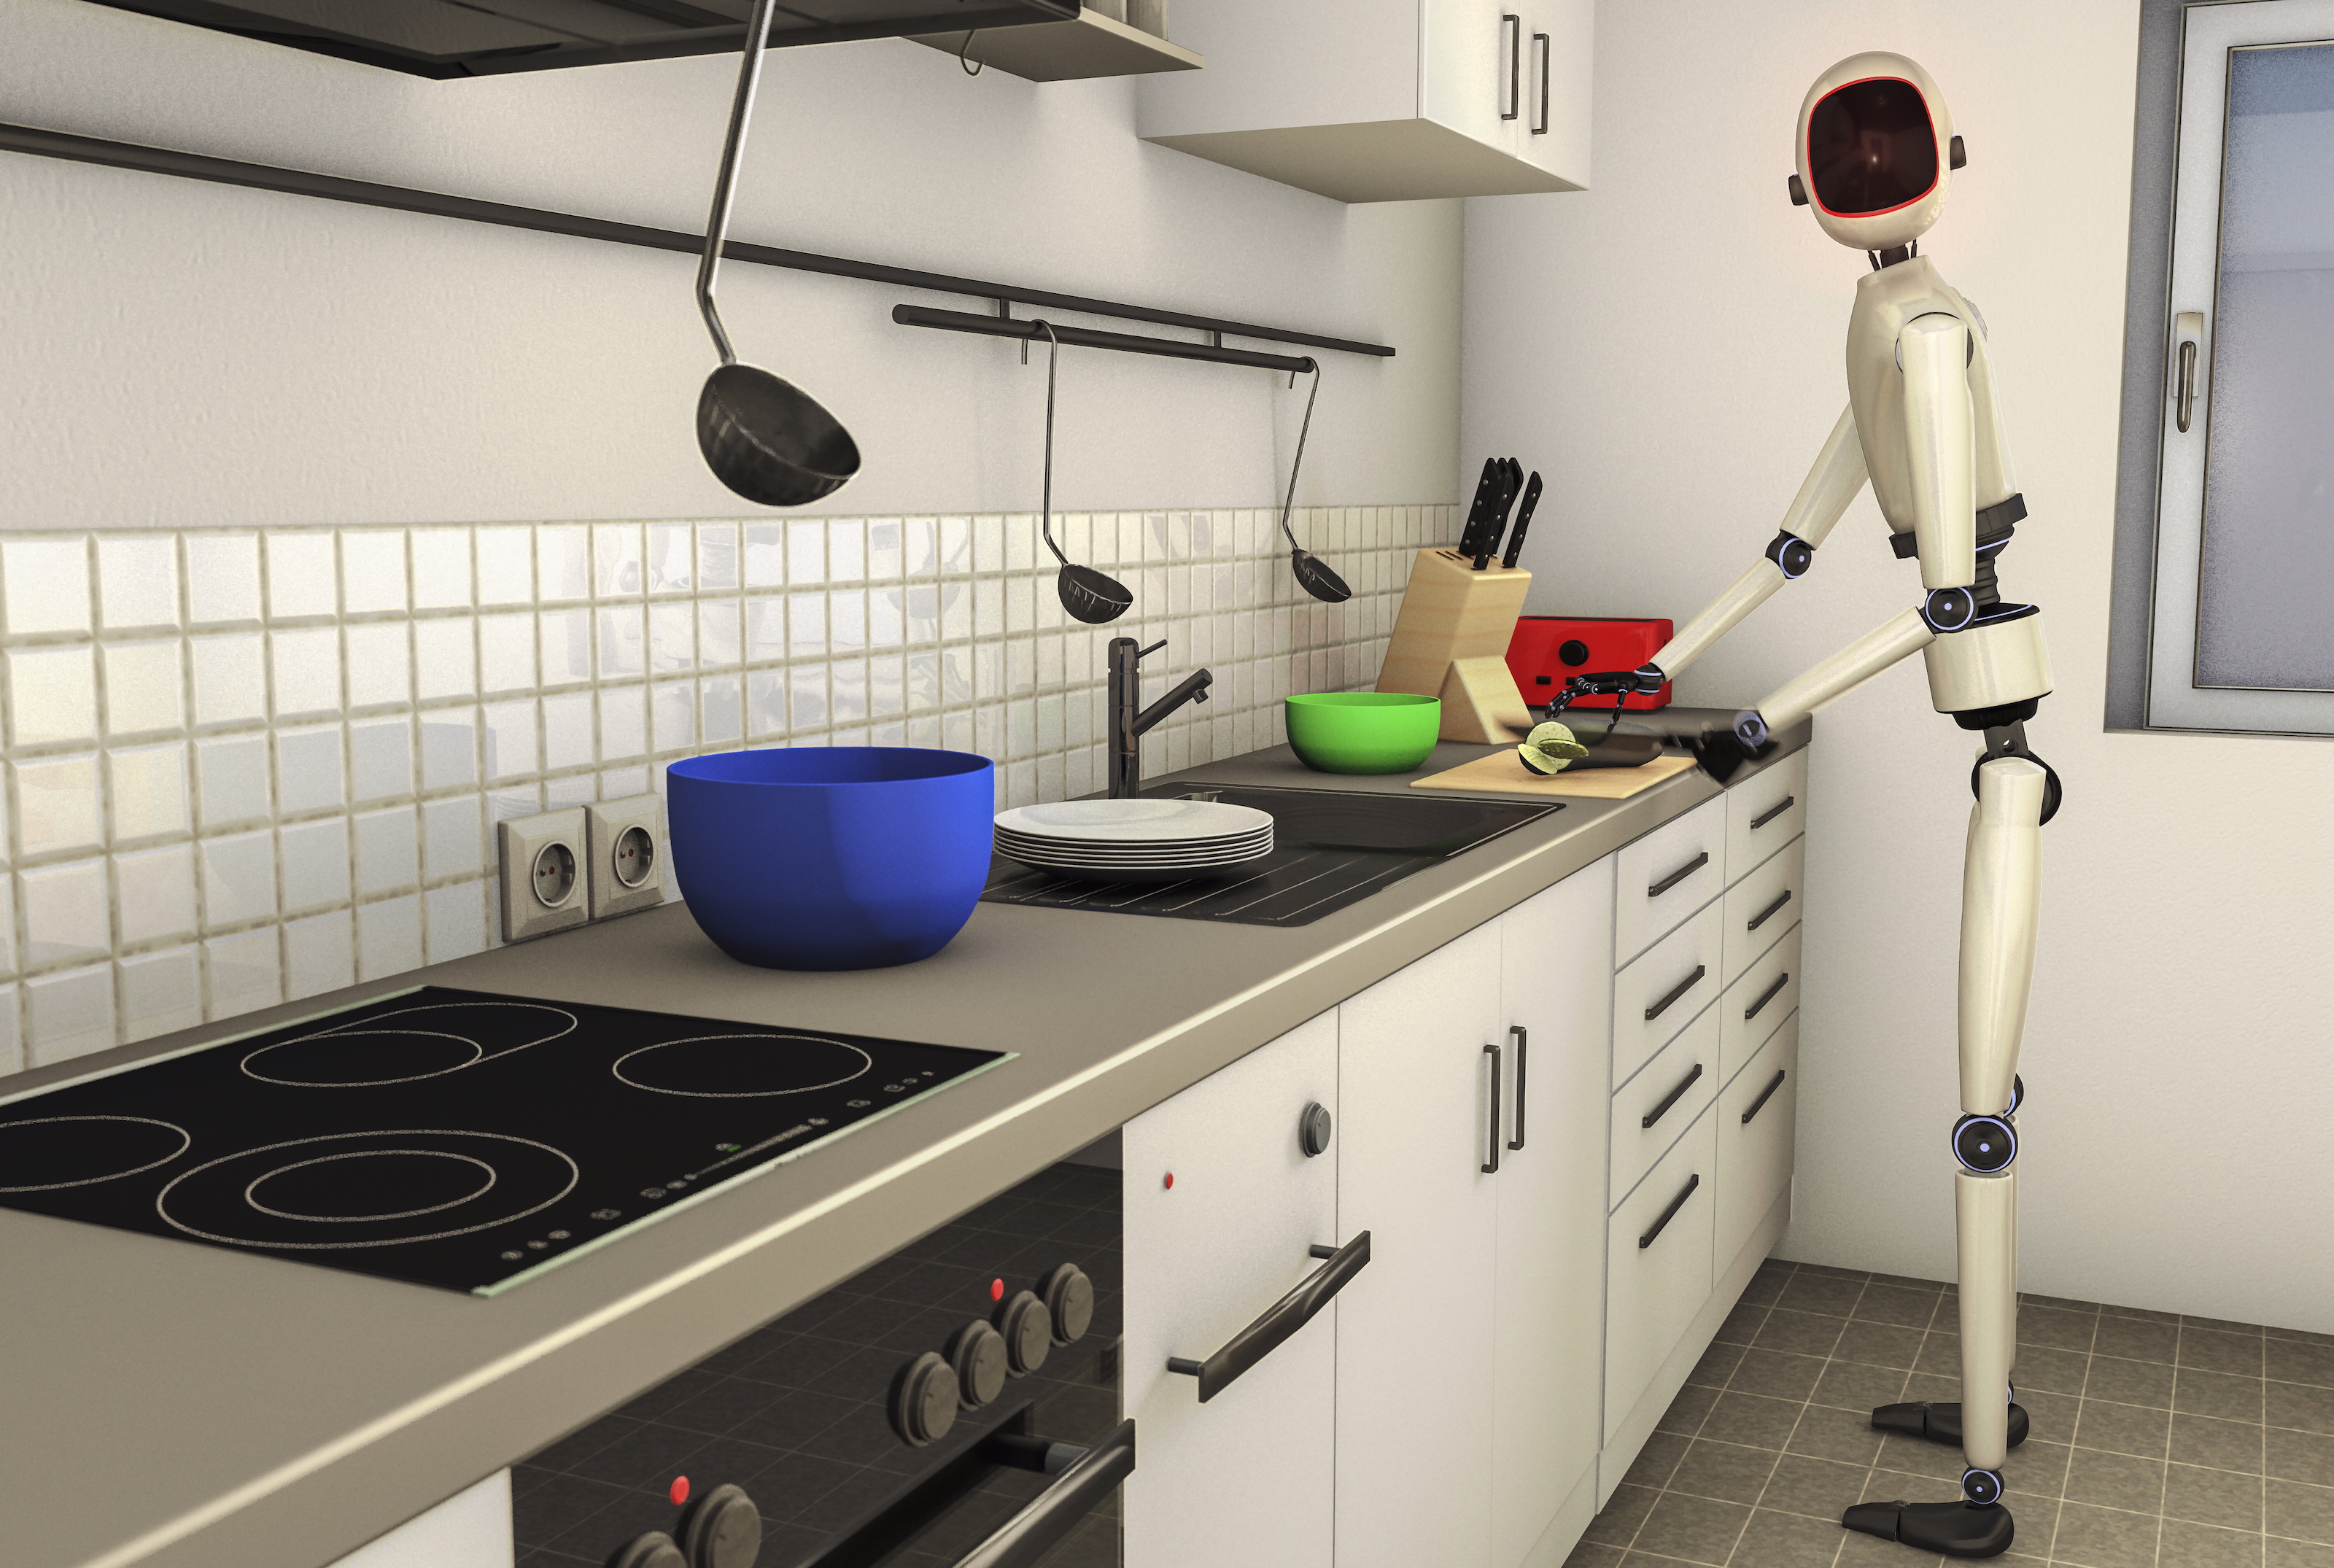 Robot working in kitchen